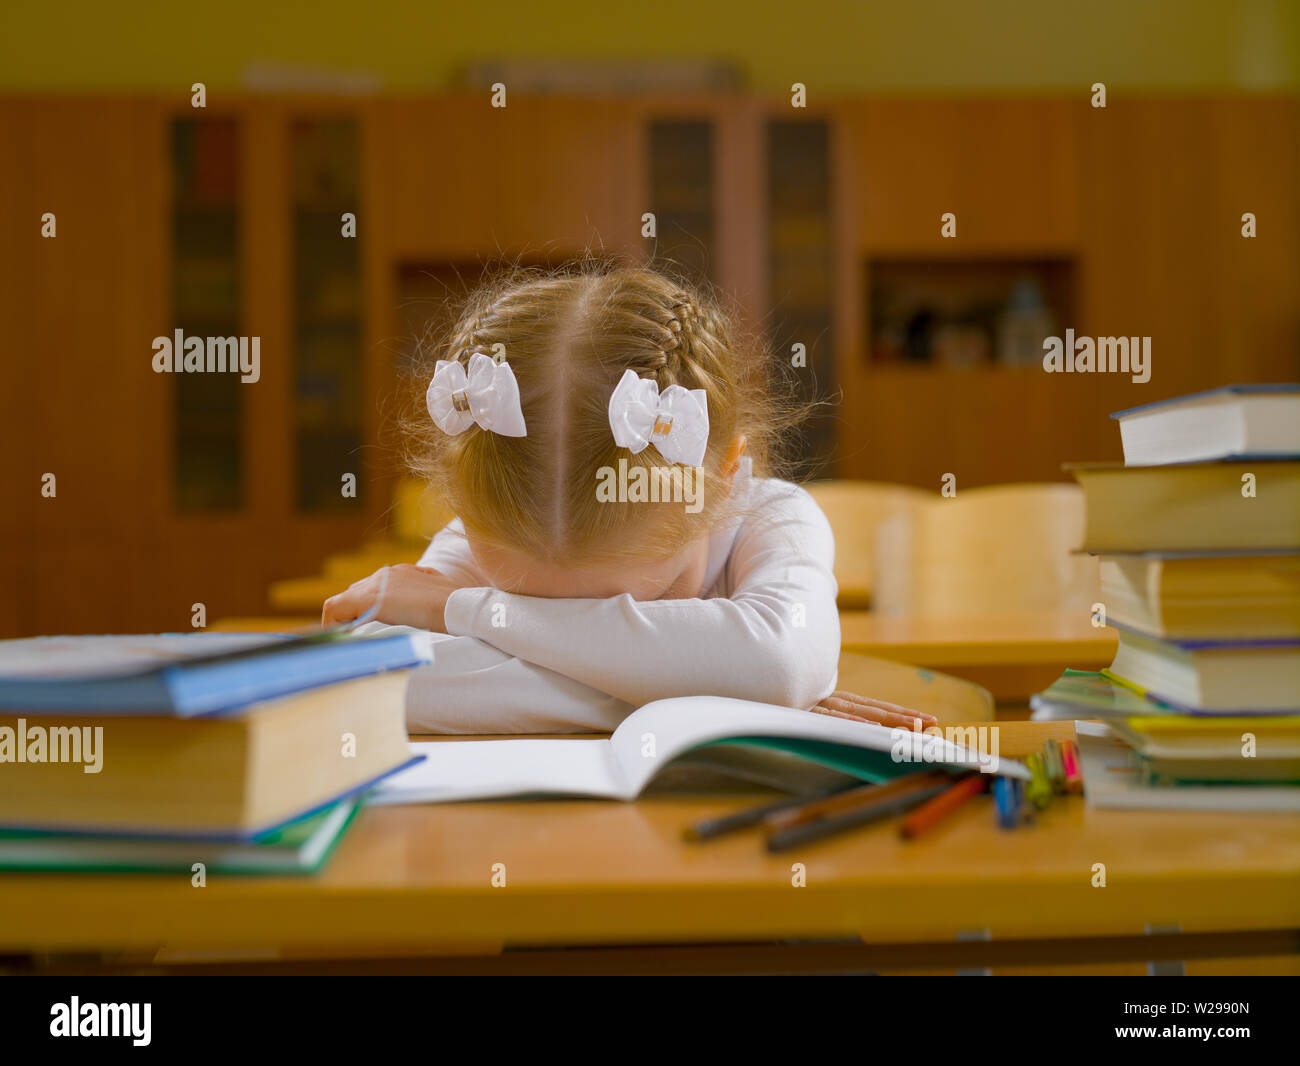 Stanco schoolgirl nella classe scolastica alla lezione alla sua scrivania con un notebook, matite e libri Foto Stock